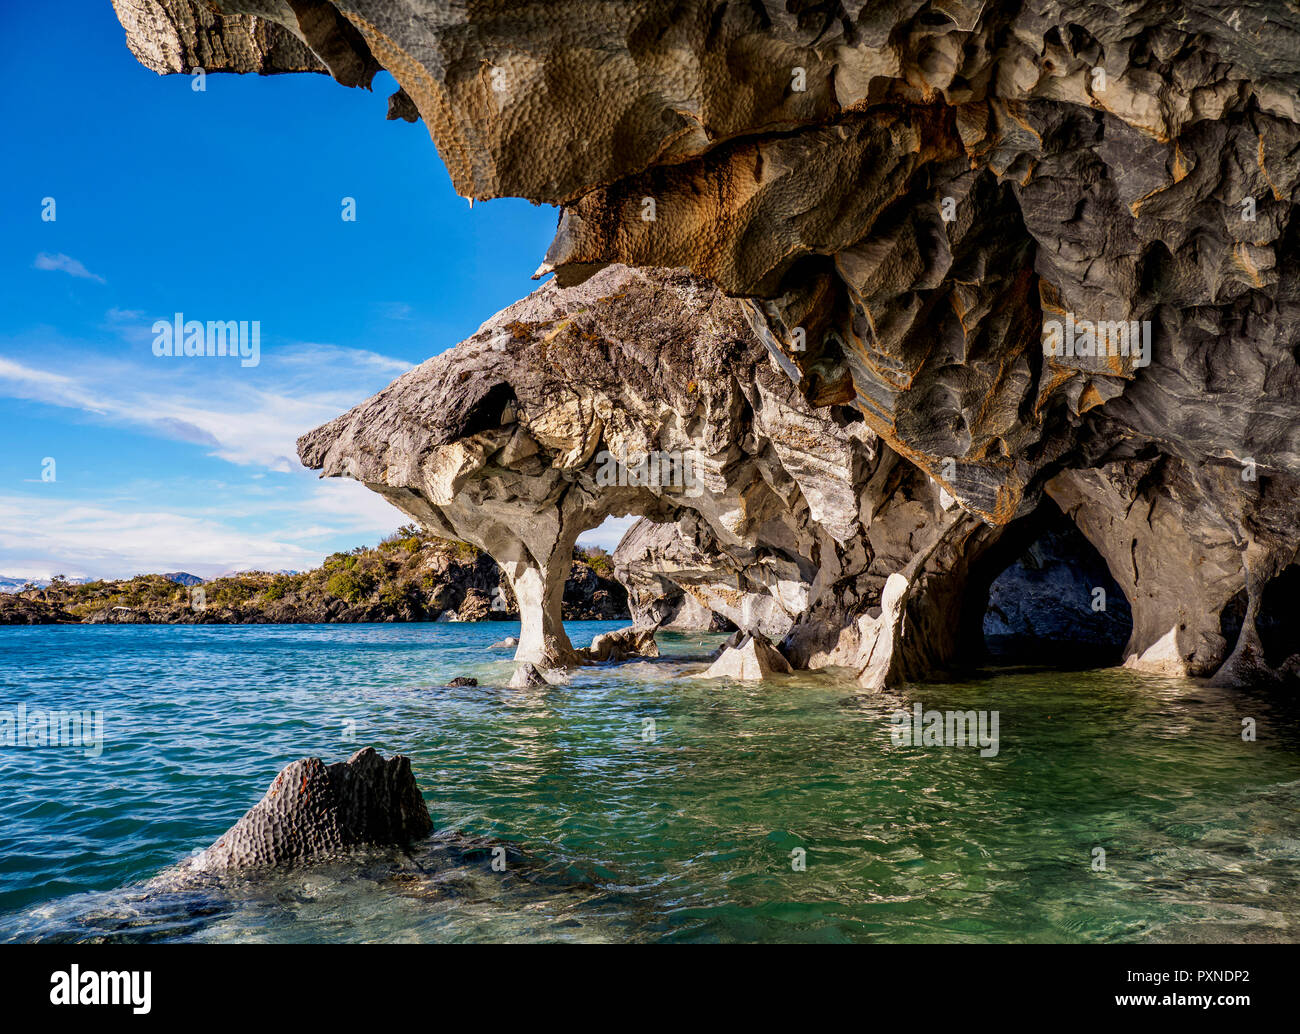 Marble Caves, Santuario de la Naturaleza Capillas de Marmol, General Carrera Lake, Puerto Rio Tranquilo, Aysen Region, Patagonia, Chile Stock Photo